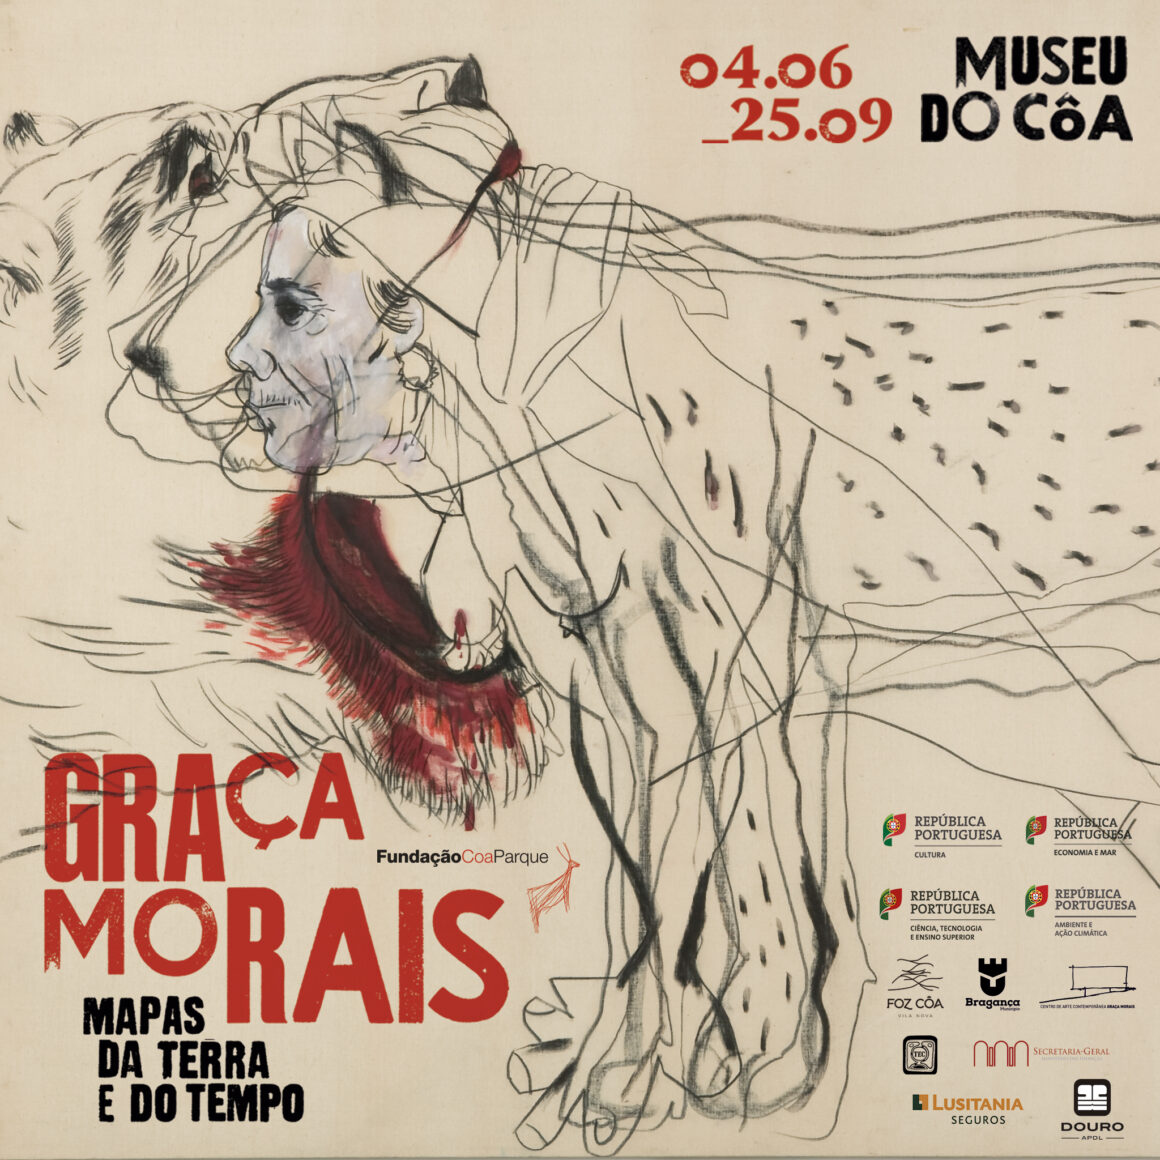 GRAÇA MORAIS – MAPS OF EARTH AND TIME